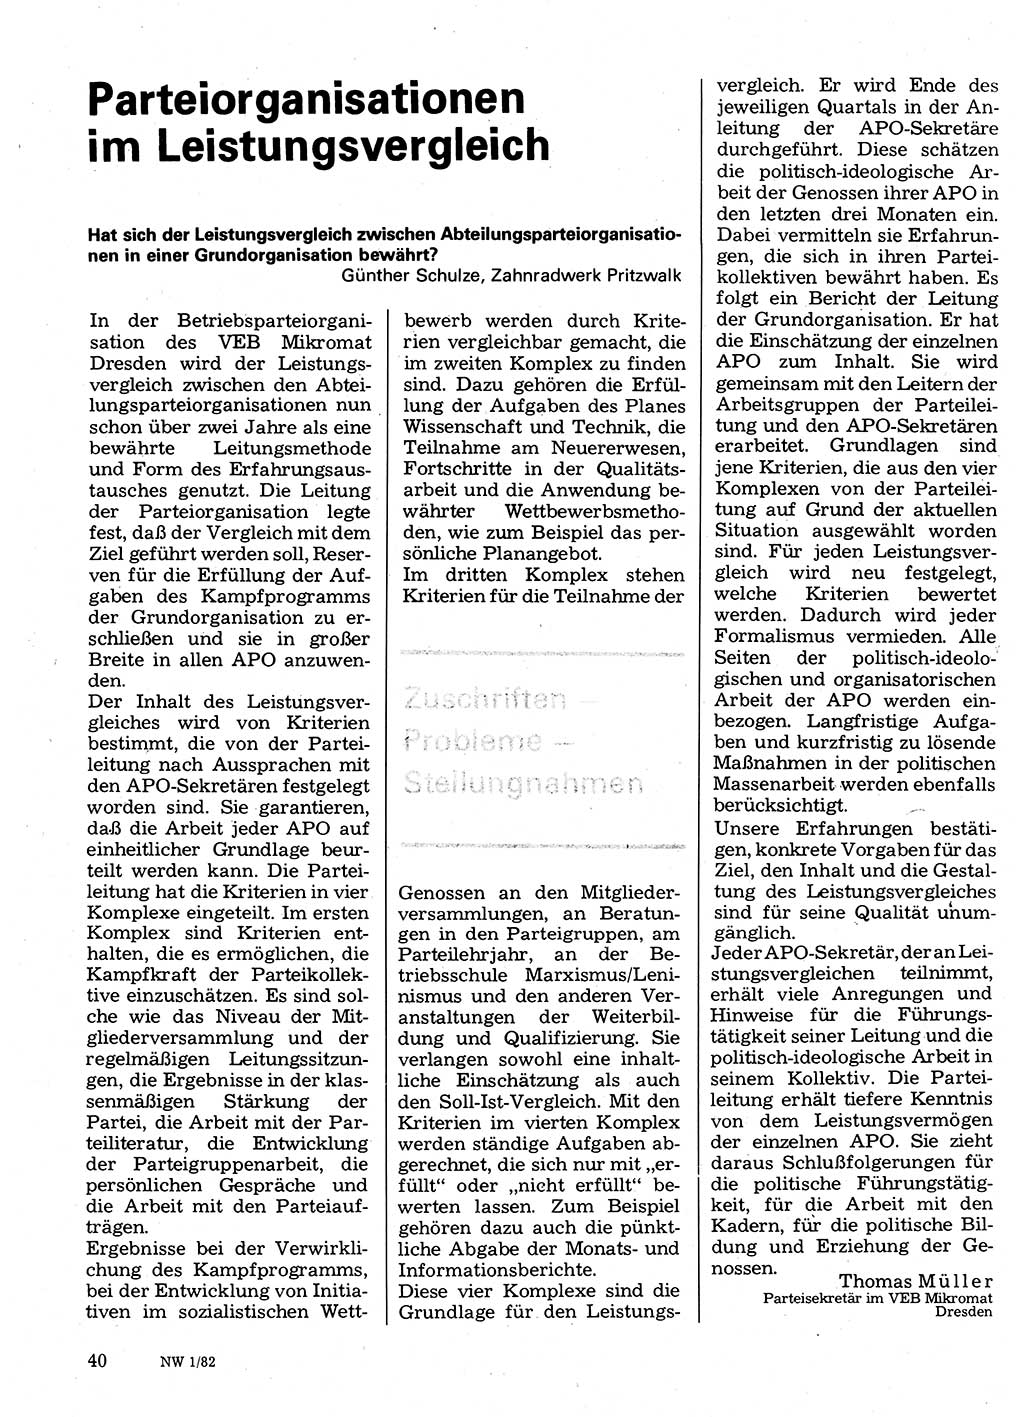 Neuer Weg (NW), Organ des Zentralkomitees (ZK) der SED (Sozialistische Einheitspartei Deutschlands) für Fragen des Parteilebens, 37. Jahrgang [Deutsche Demokratische Republik (DDR)] 1982, Seite 40 (NW ZK SED DDR 1982, S. 40)